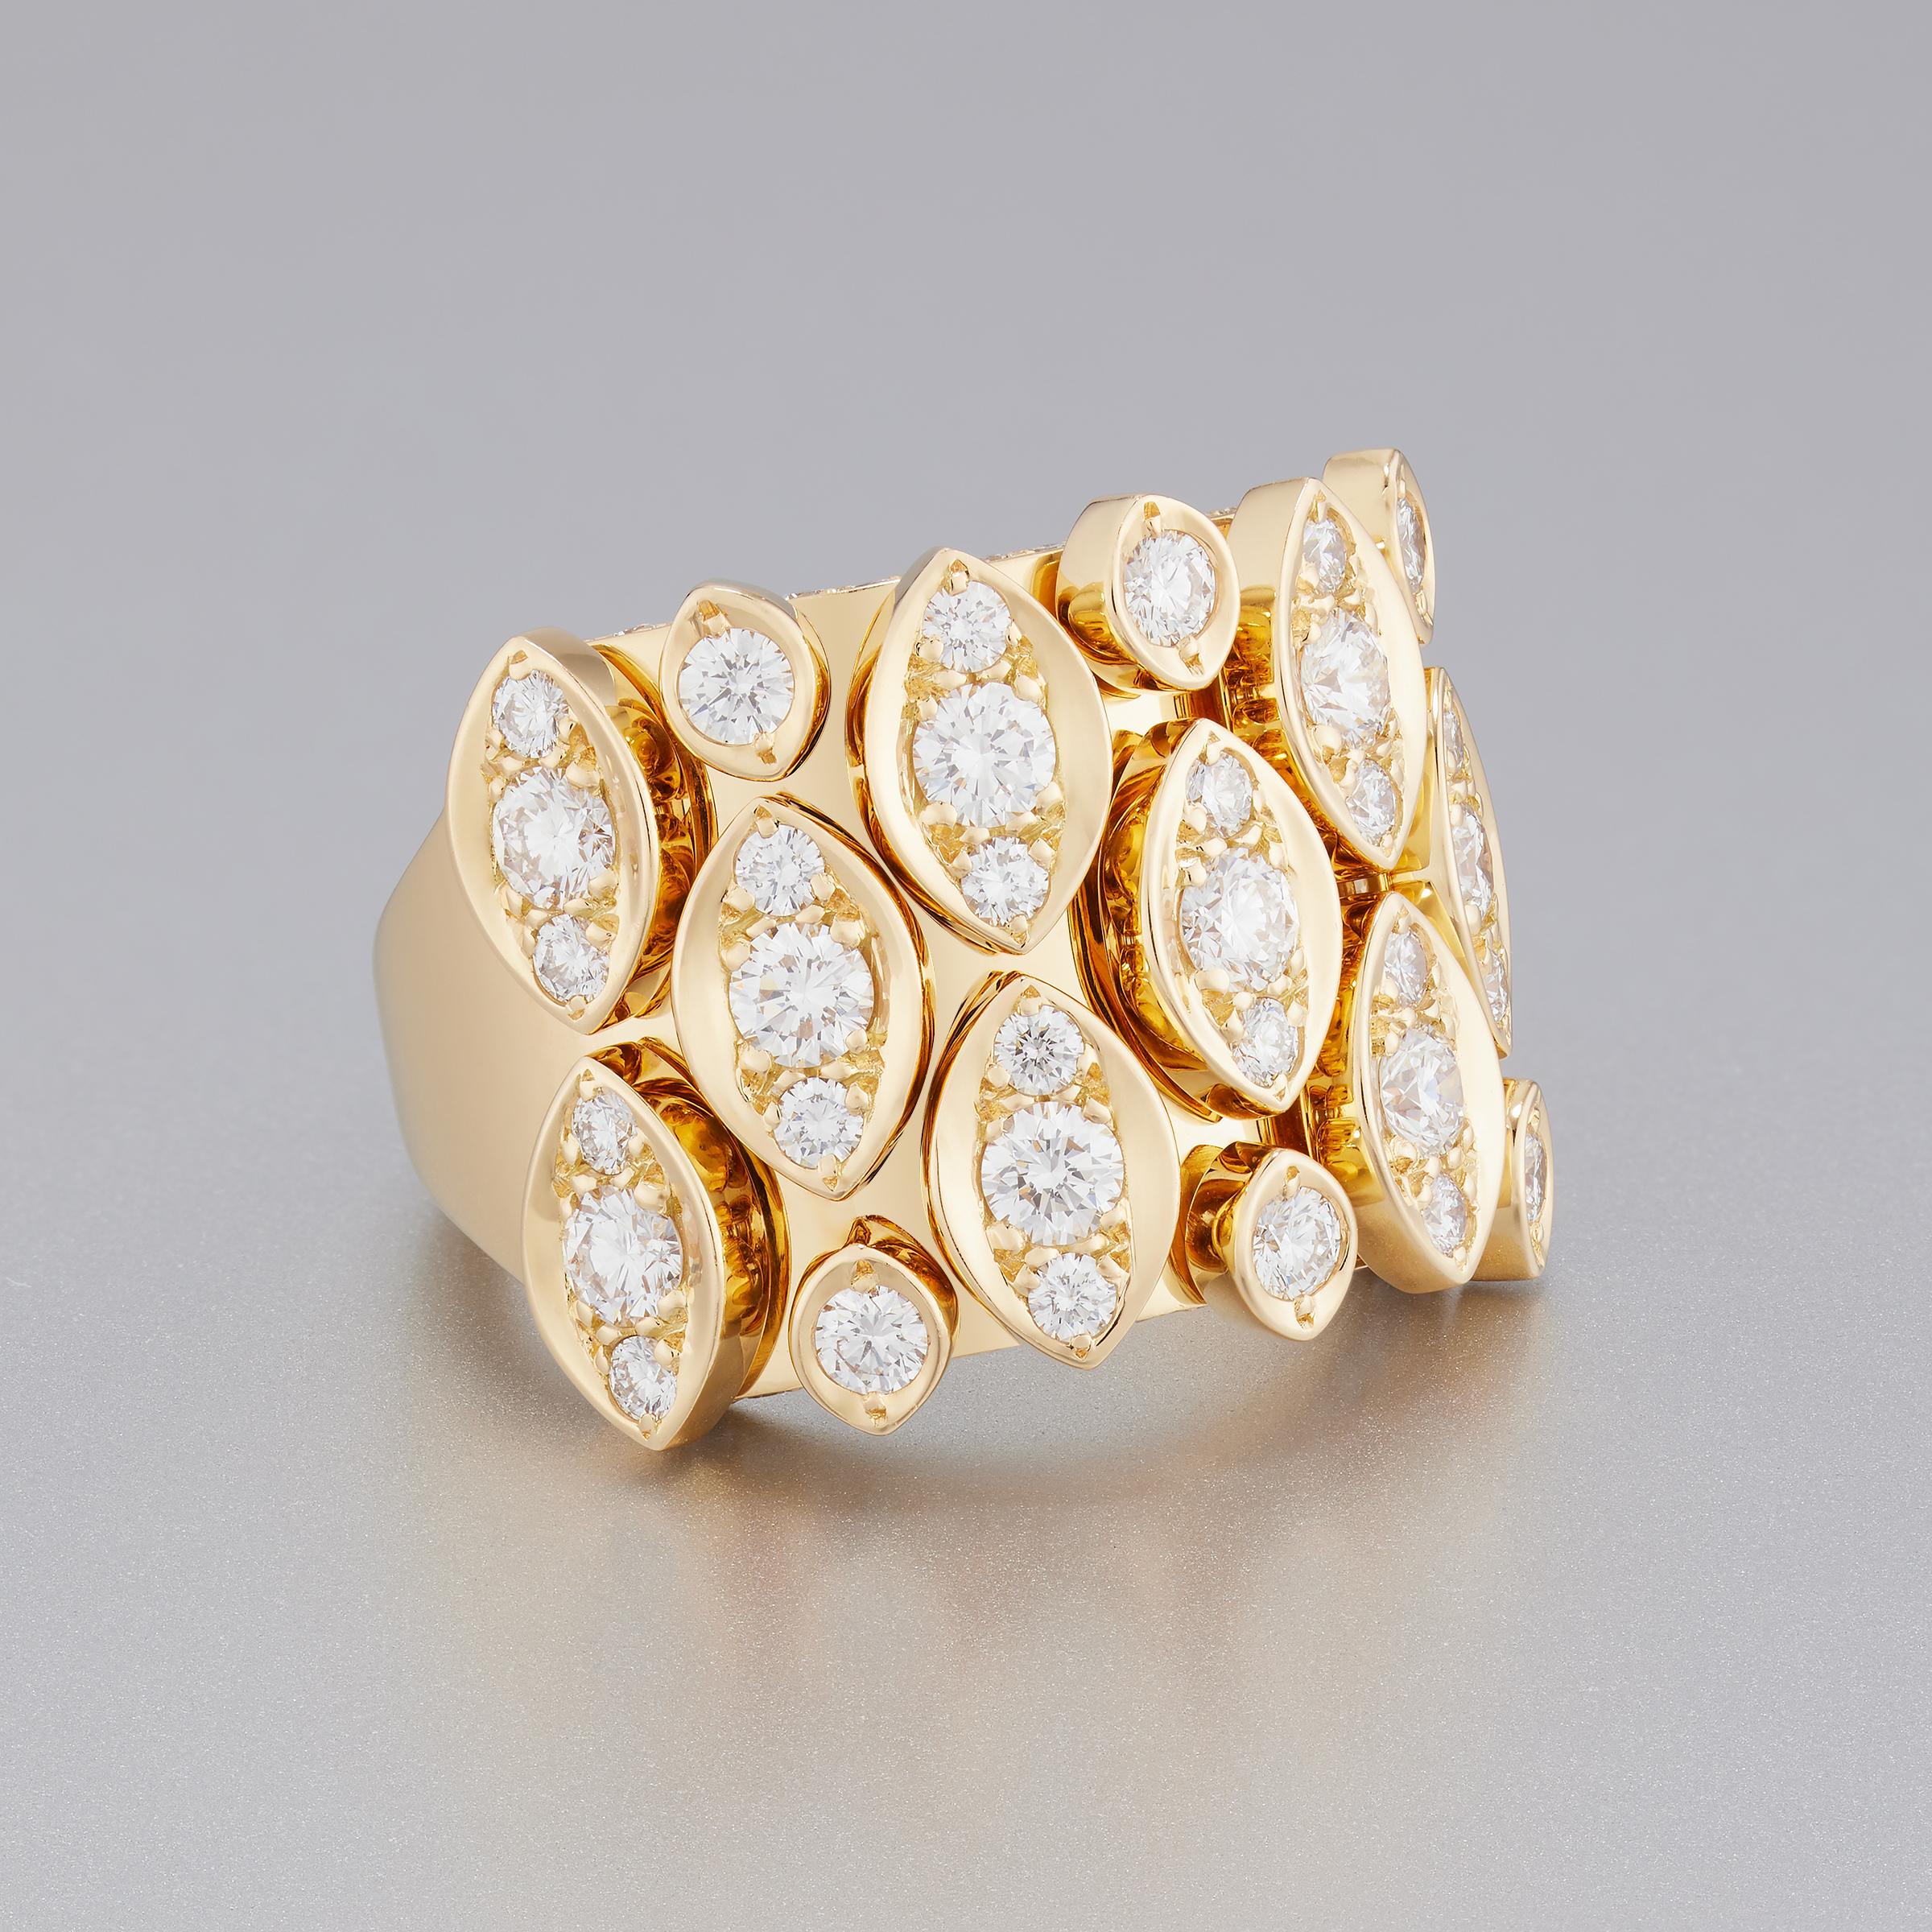 La spectaculaire bague en diamant Cartier de la collection Diadea présente environ 1,6 carats de diamants de la plus haute qualité (couleur E-F et pureté VVS) sertis dans une opulente monture en or jaune 18 carats. Les diamants ronds et brillants